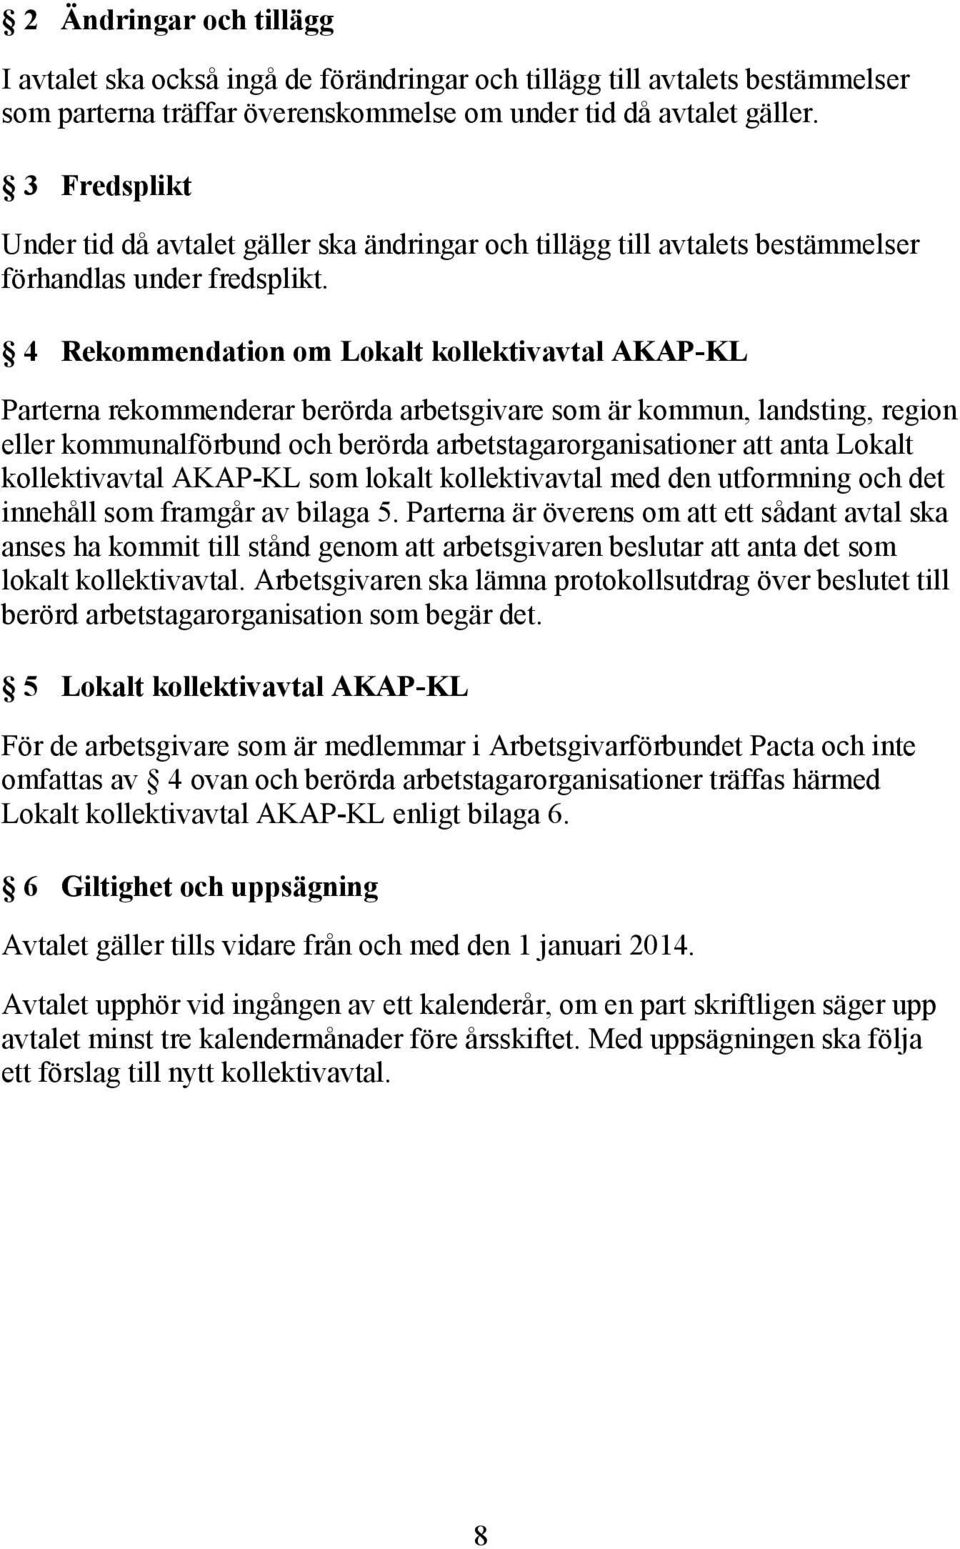 4 Rekommendation om Lokalt kollektivavtal AKAP-KL Parterna rekommenderar berörda arbetsgivare som är kommun, landsting, region eller kommunalförbund och berörda arbetstagarorganisationer att anta